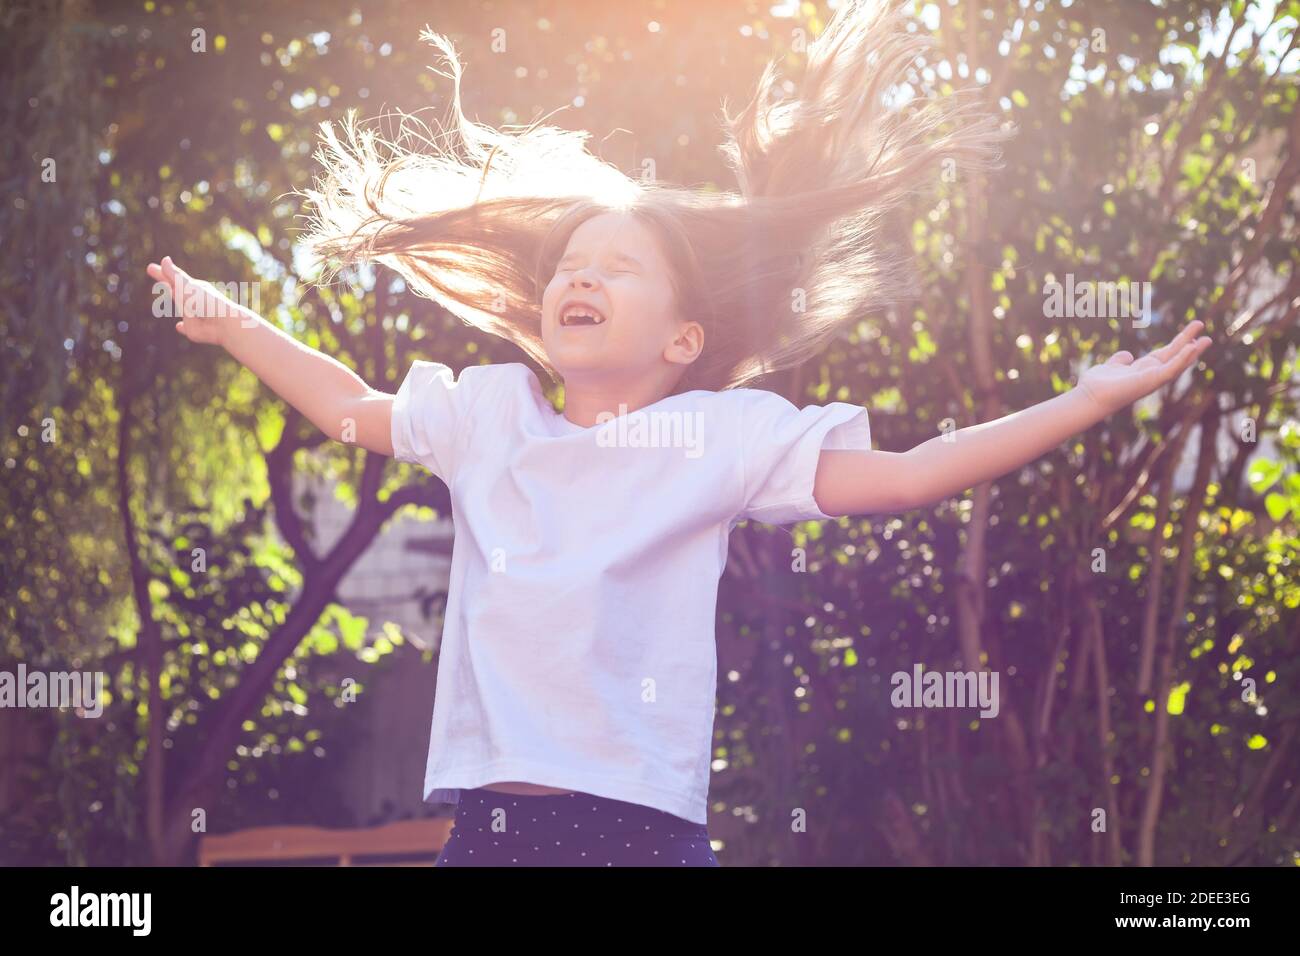 Glücklich junges Mädchen allein, kleine fröhliche Schulalter Kind springen, fliegen zerstreute Haare, Arme ausgebreitet, Sonnenlicht, im Freien Porträt. Kindheit Stockfoto